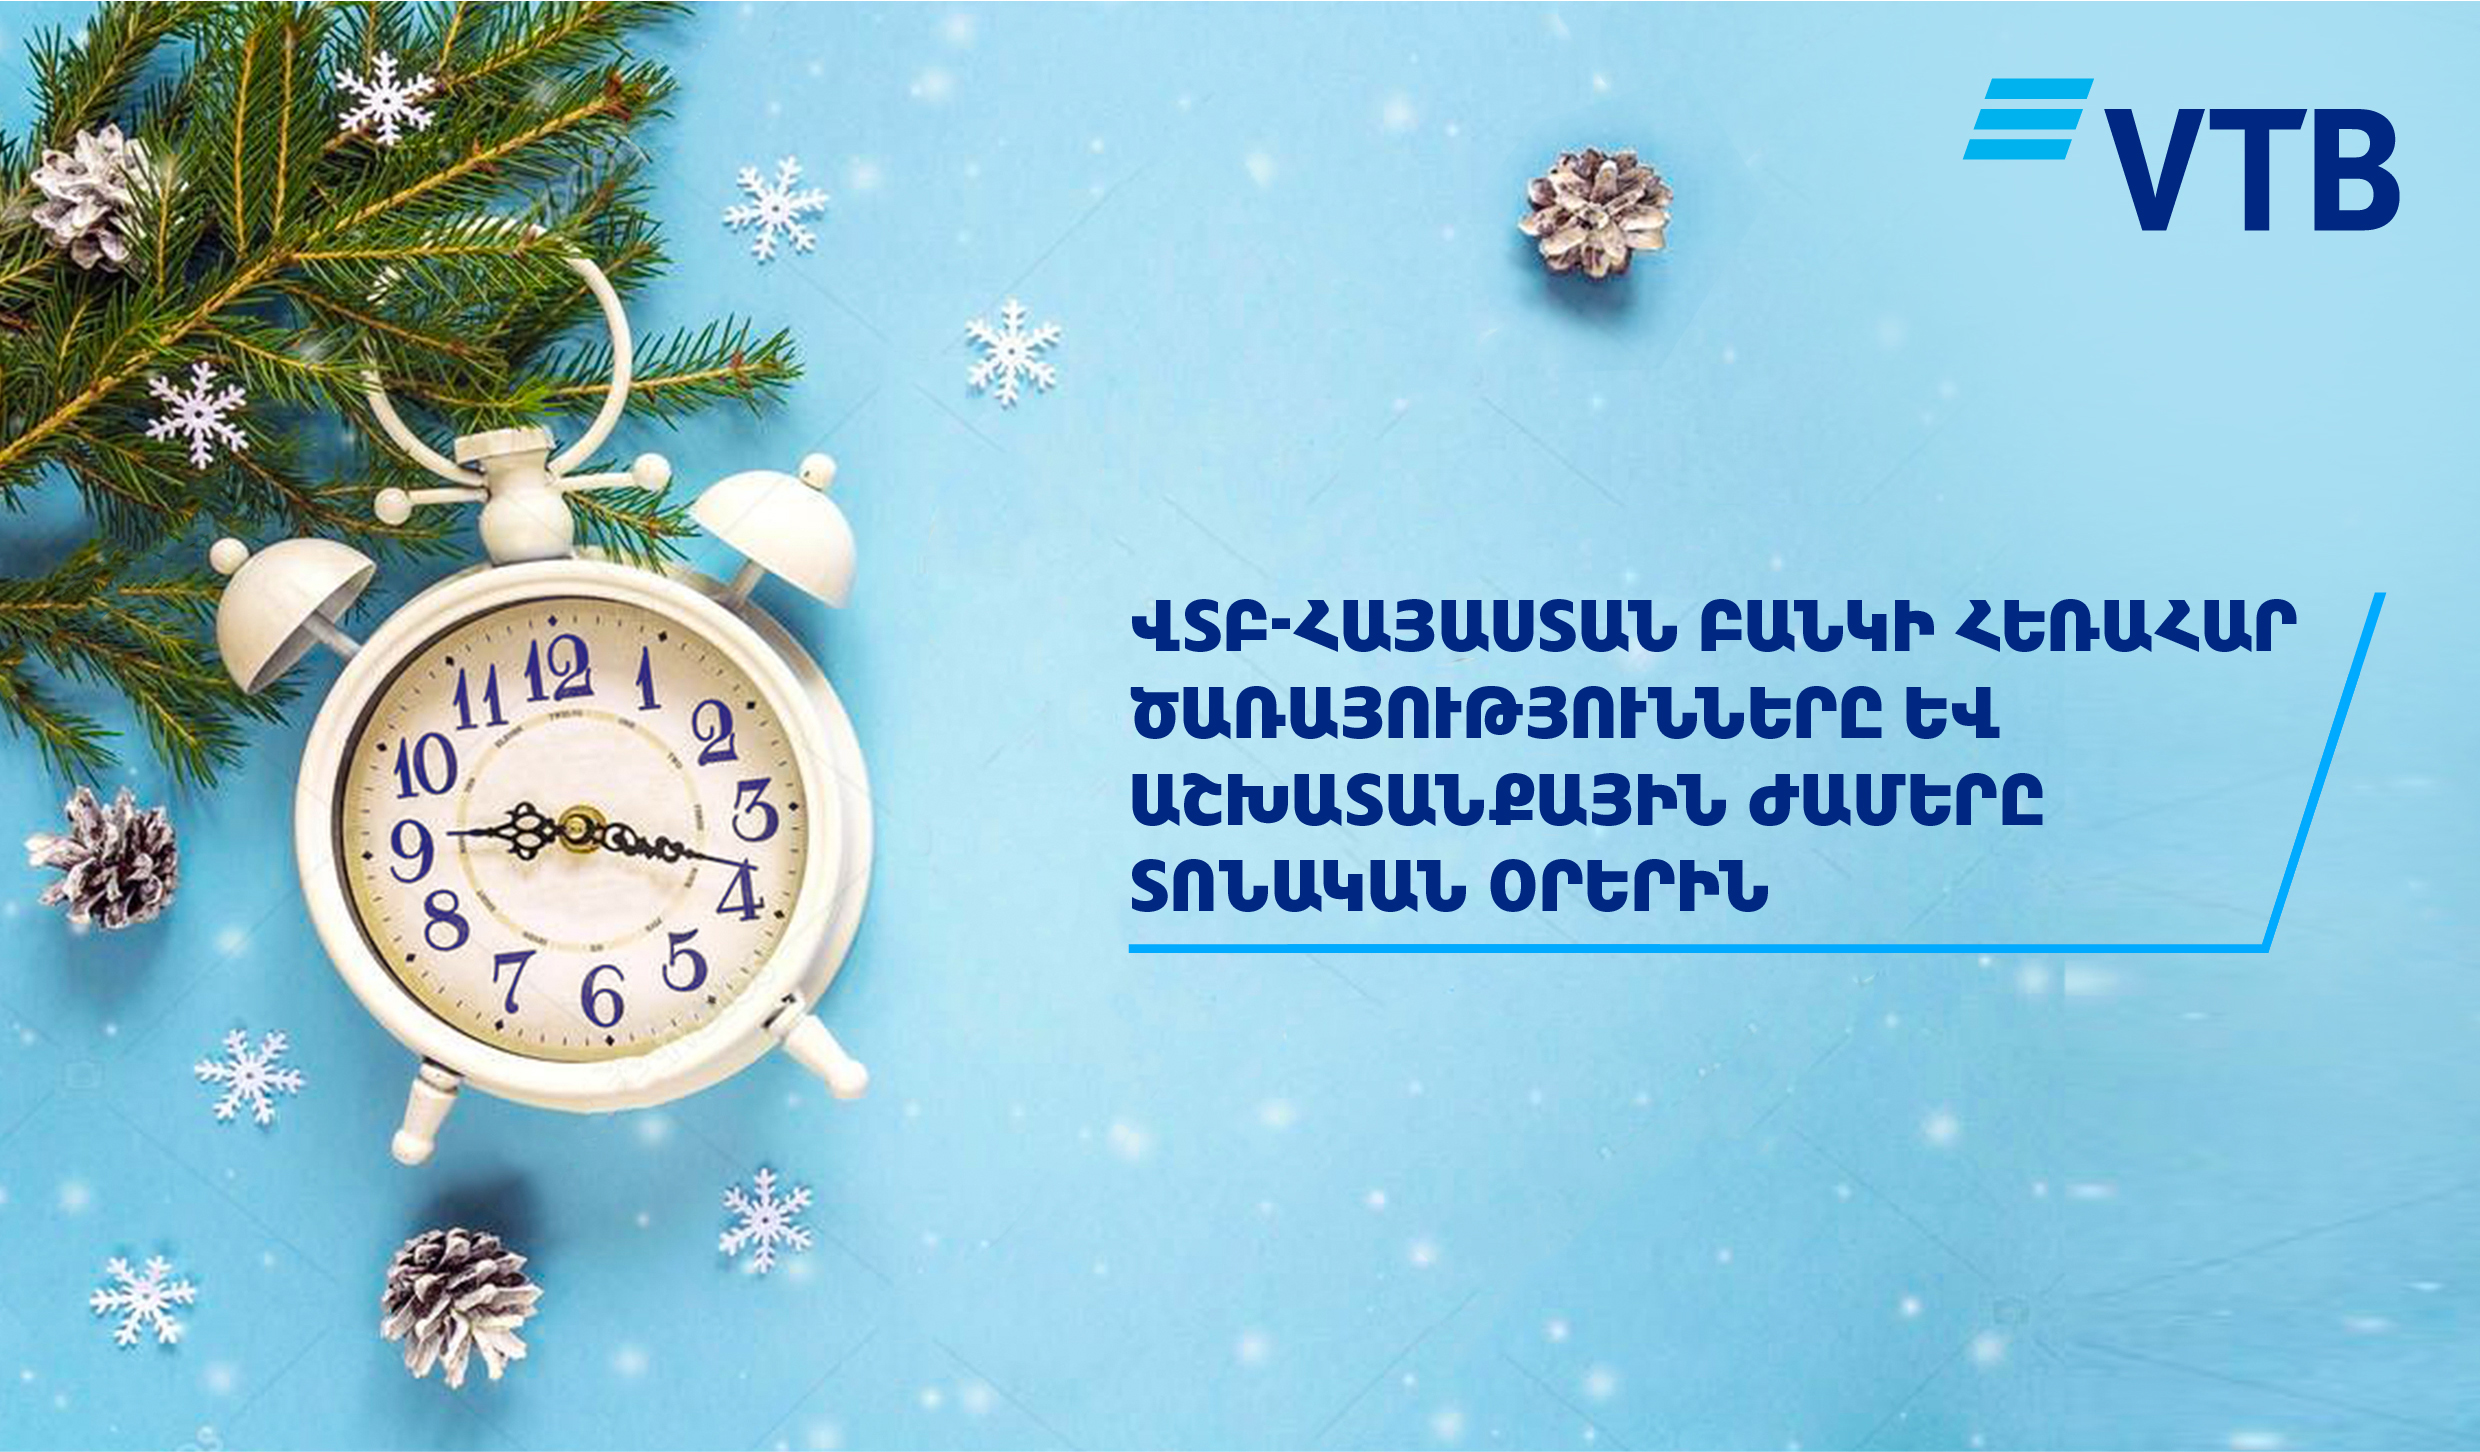 Ереван режим работы. Часы ВТБ. Банки ВТБ работа в праздничные дни. ВТБ праздник. ВТБ реклама новый год праздник.